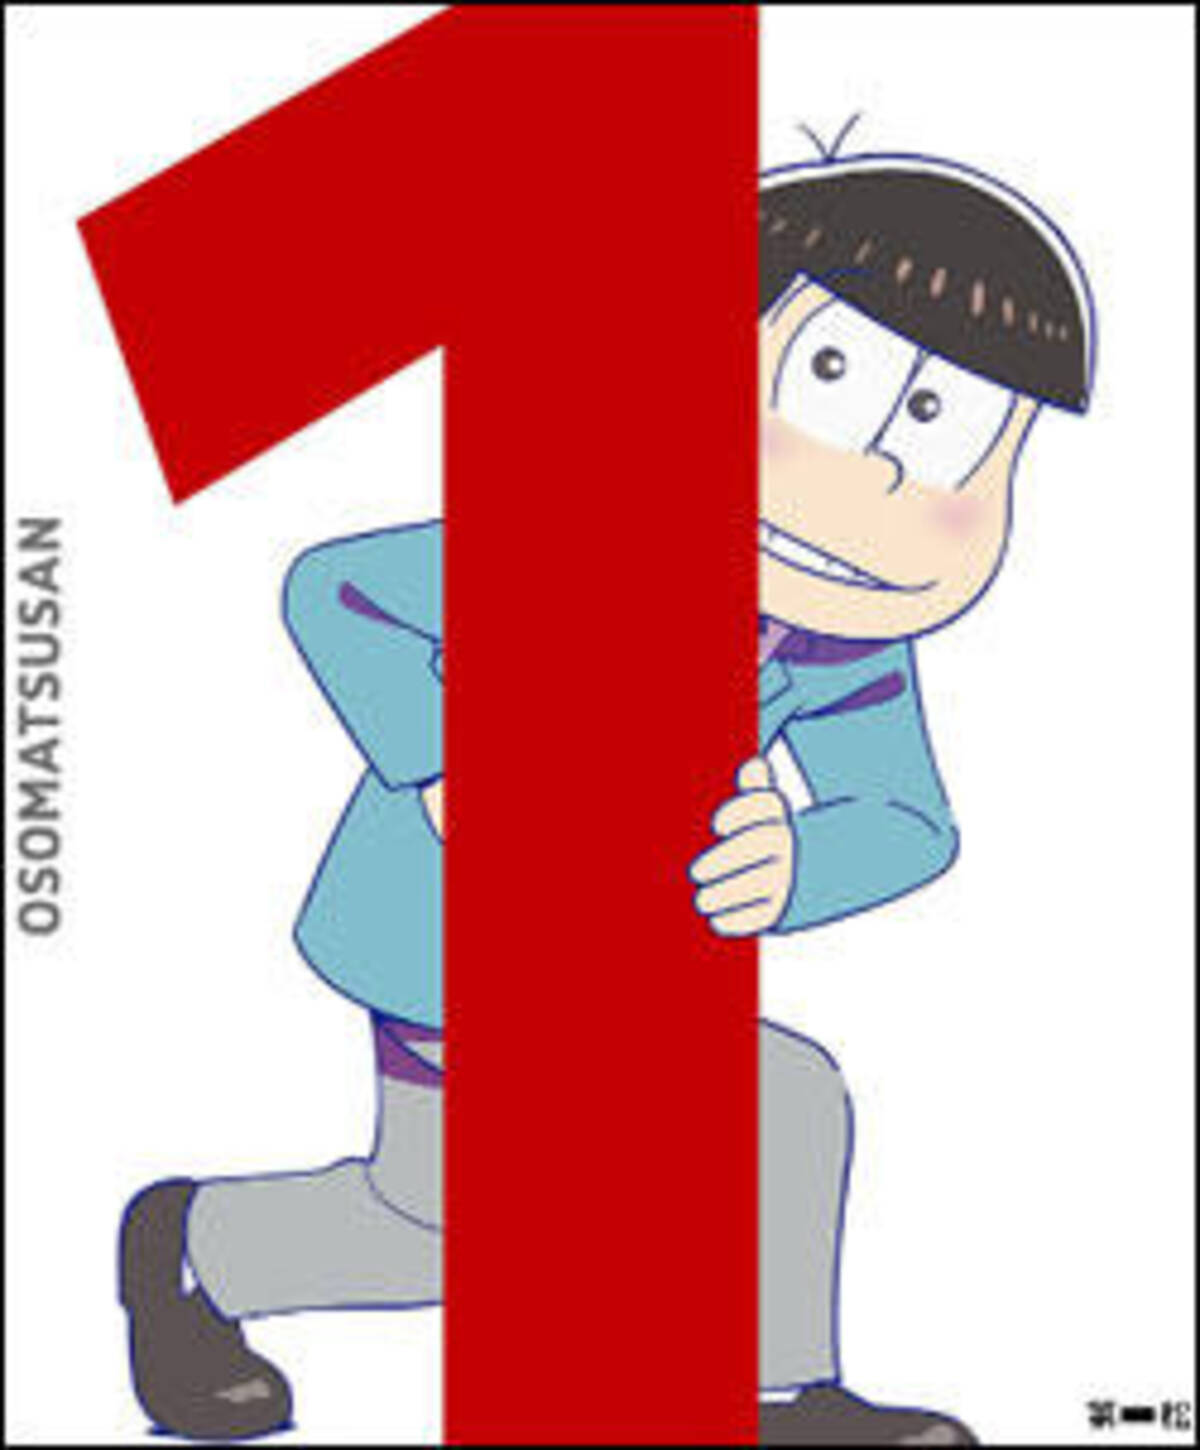 おそ松さん Dvdが アニメ 特撮部門 Dvd 年間売り上げ第1位に 女性オタクはbdよりdvdを好む 16年12月28日 エキサイトニュース